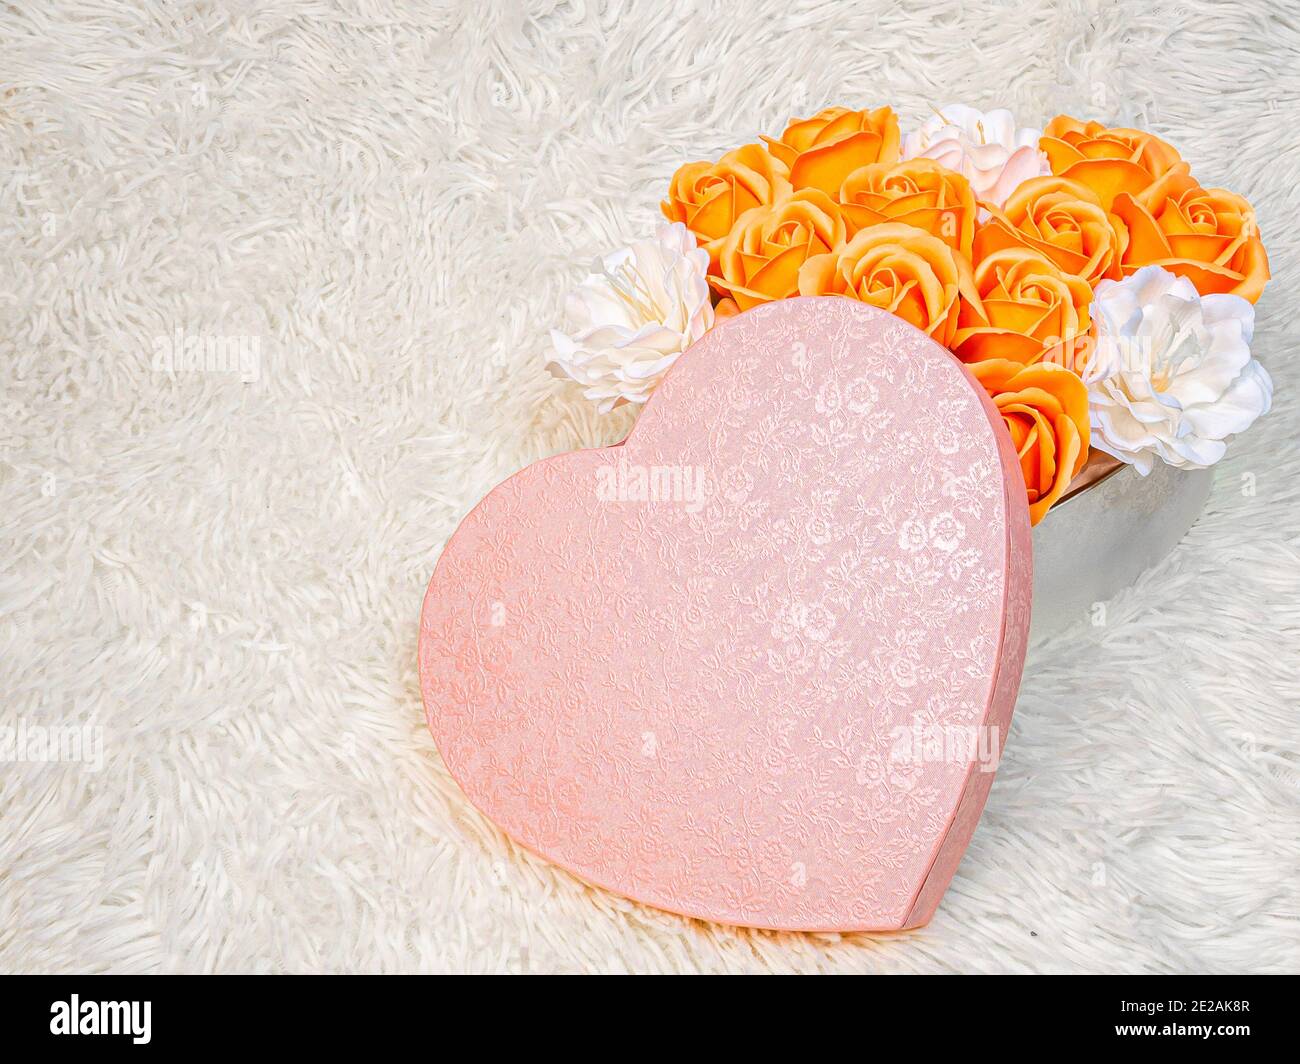 Roses orange et fleurs blanches dans une boîte rose en forme de coeur sur  un fond blanc de fourrure. Un cadeau romantique et doux pour votre  bien-aimé Photo Stock - Alamy